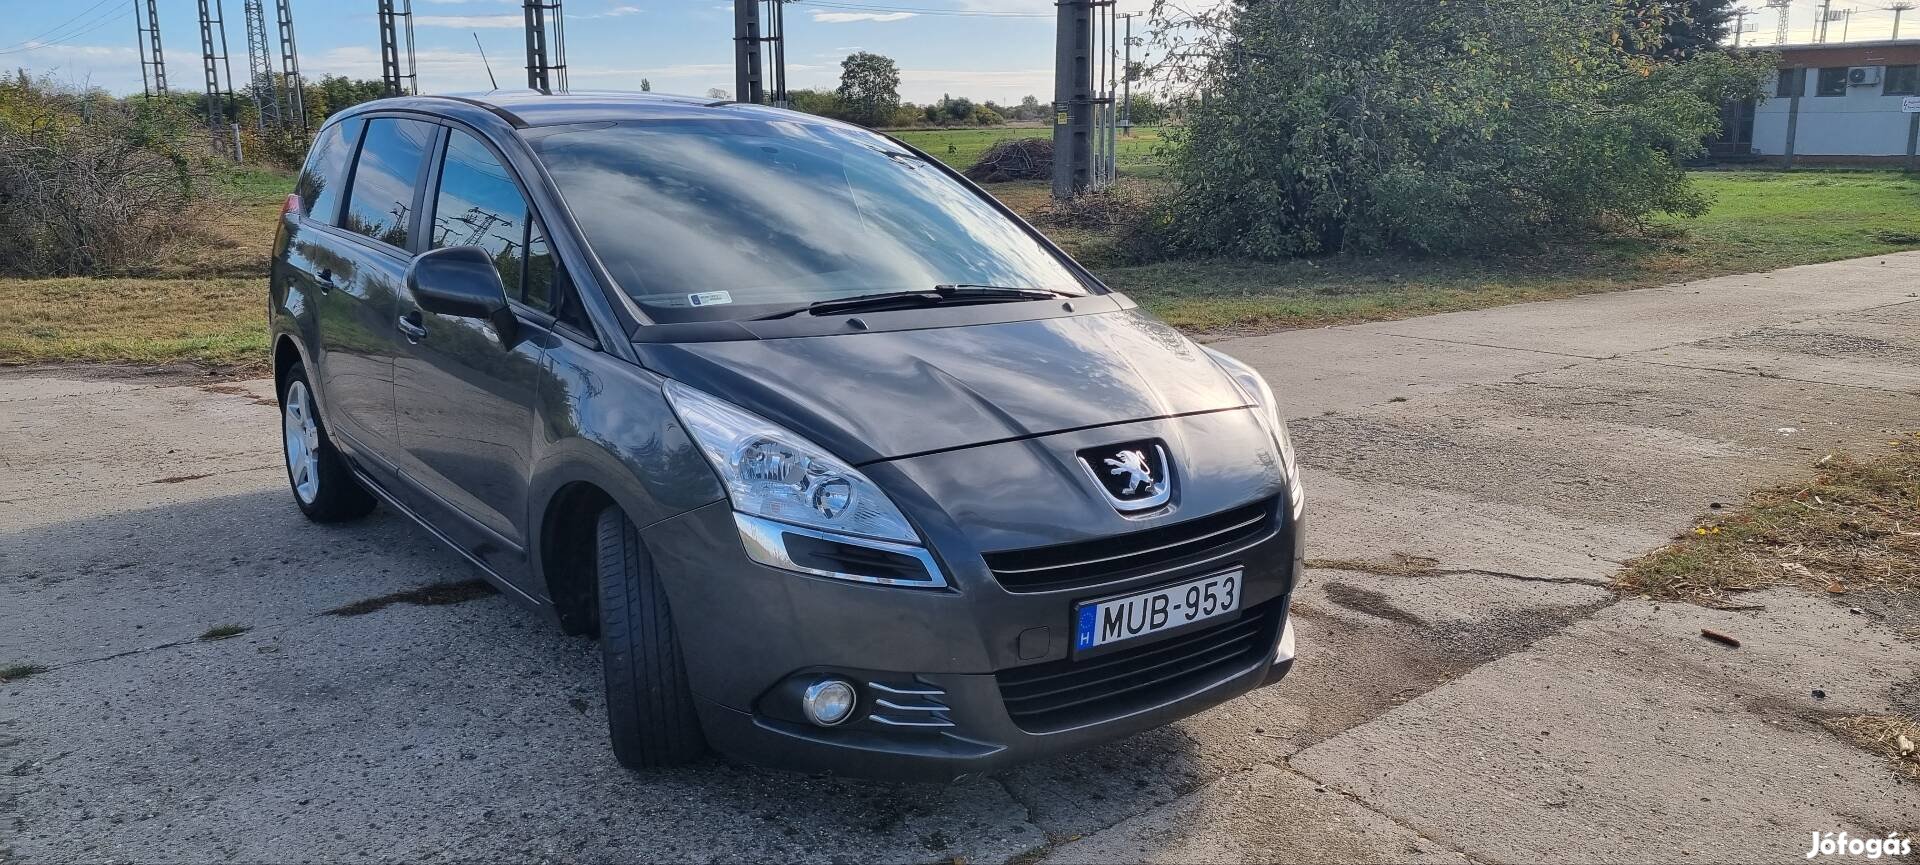 Eladó Peugeot 5008 1.6 HDI Friss műszaki!!!!